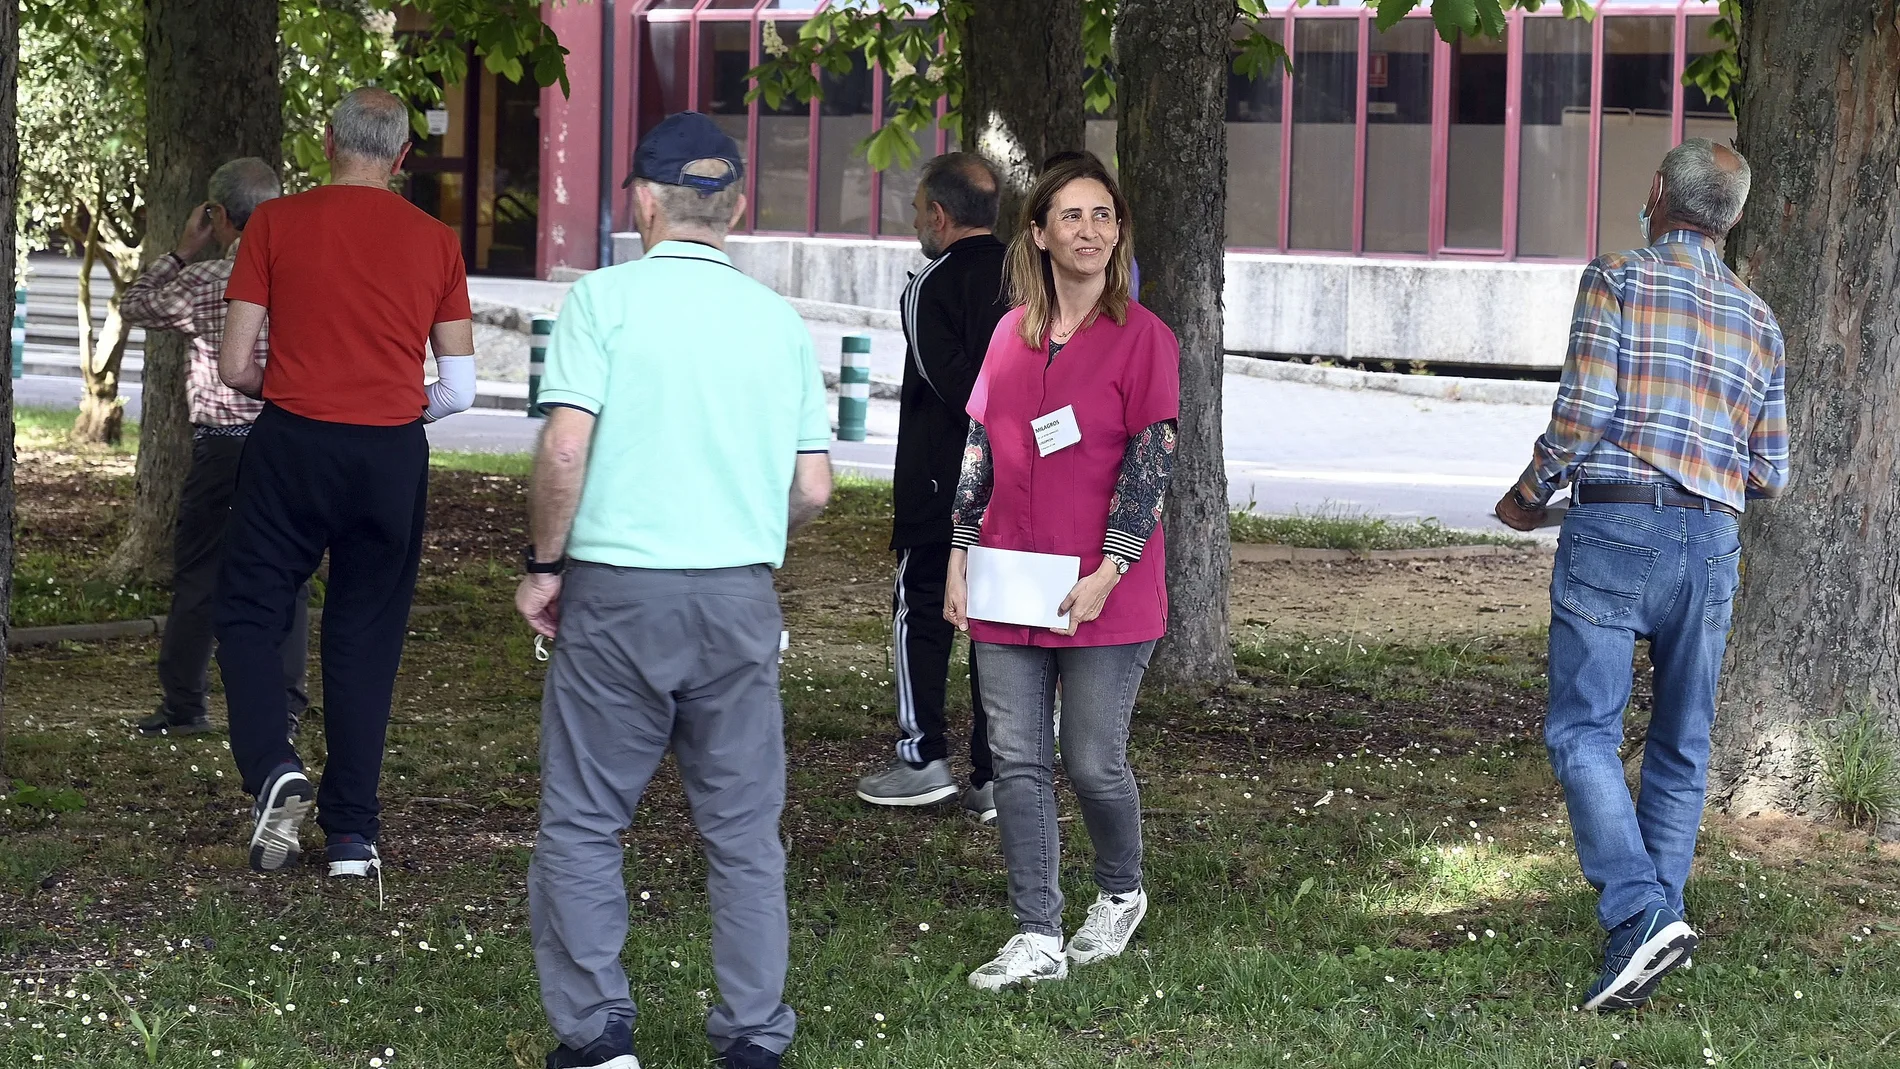 25 años sin miedo al Parkinson en Burgos